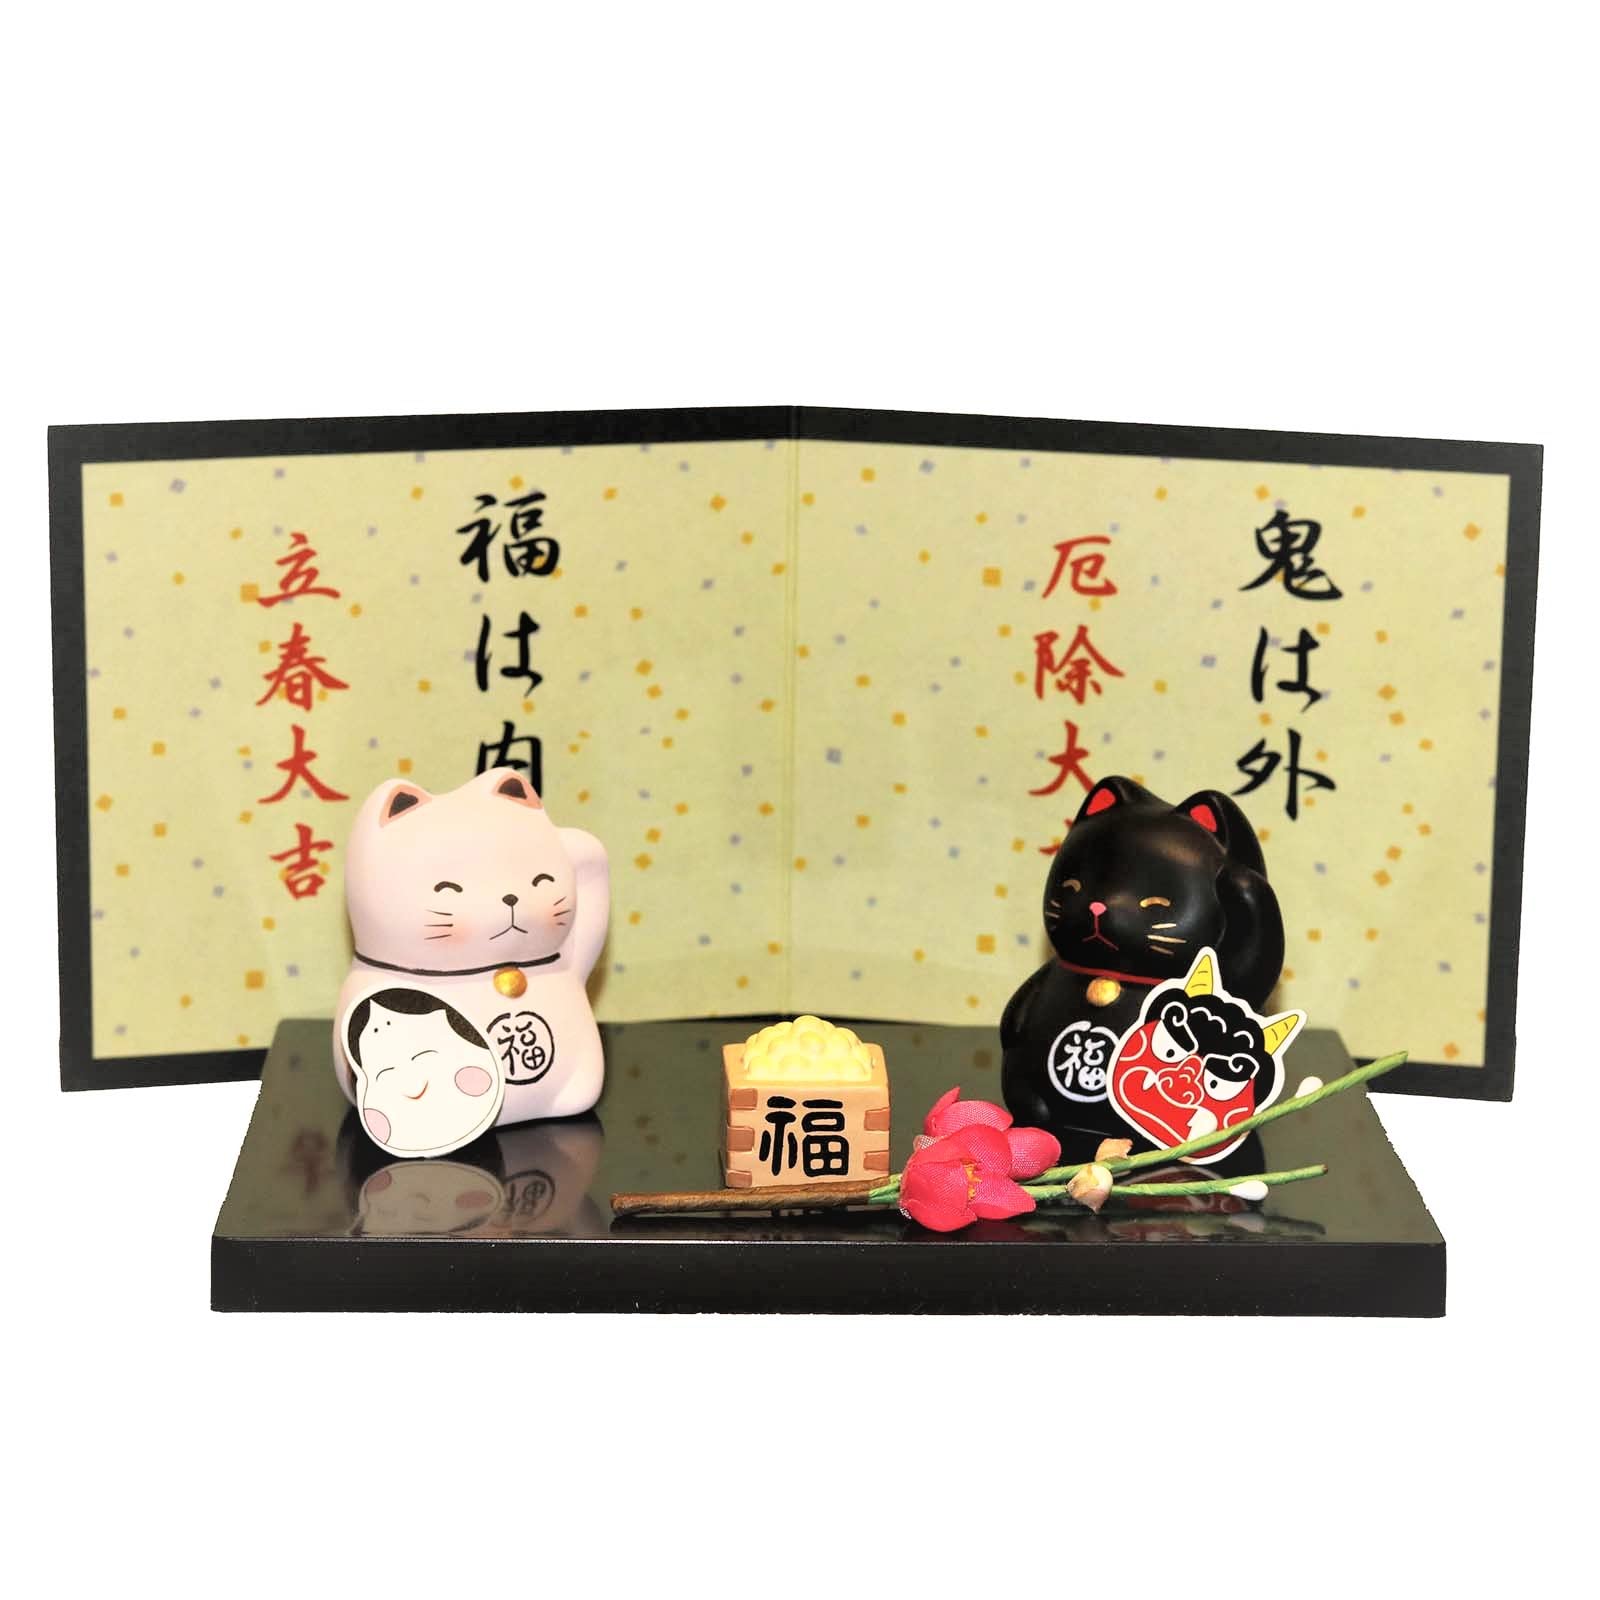 三陶(Santo) 萬古焼 置き物 インテリア オブジェ 卓上 飾り 「 日本の歳時シリーズ 」 2月 ねこの節分 ひな祭り ひなまつり 白猫 黒猫 部